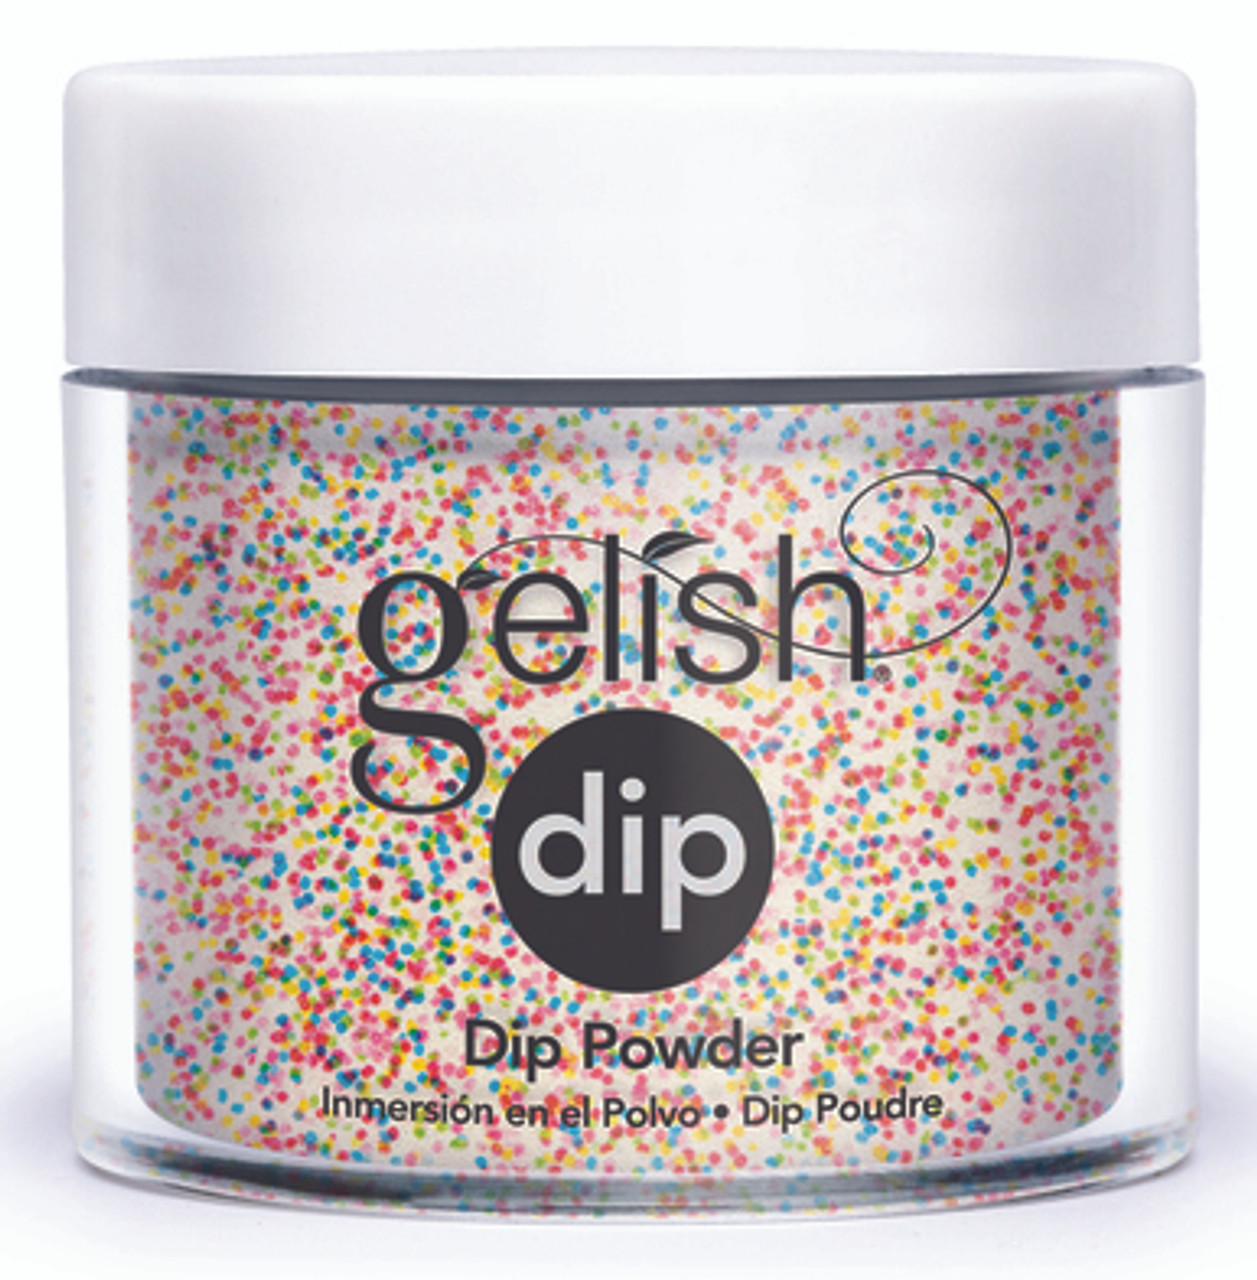 Gelish Dip Powder Lots Of Dots - 0.8 oz / 23 g